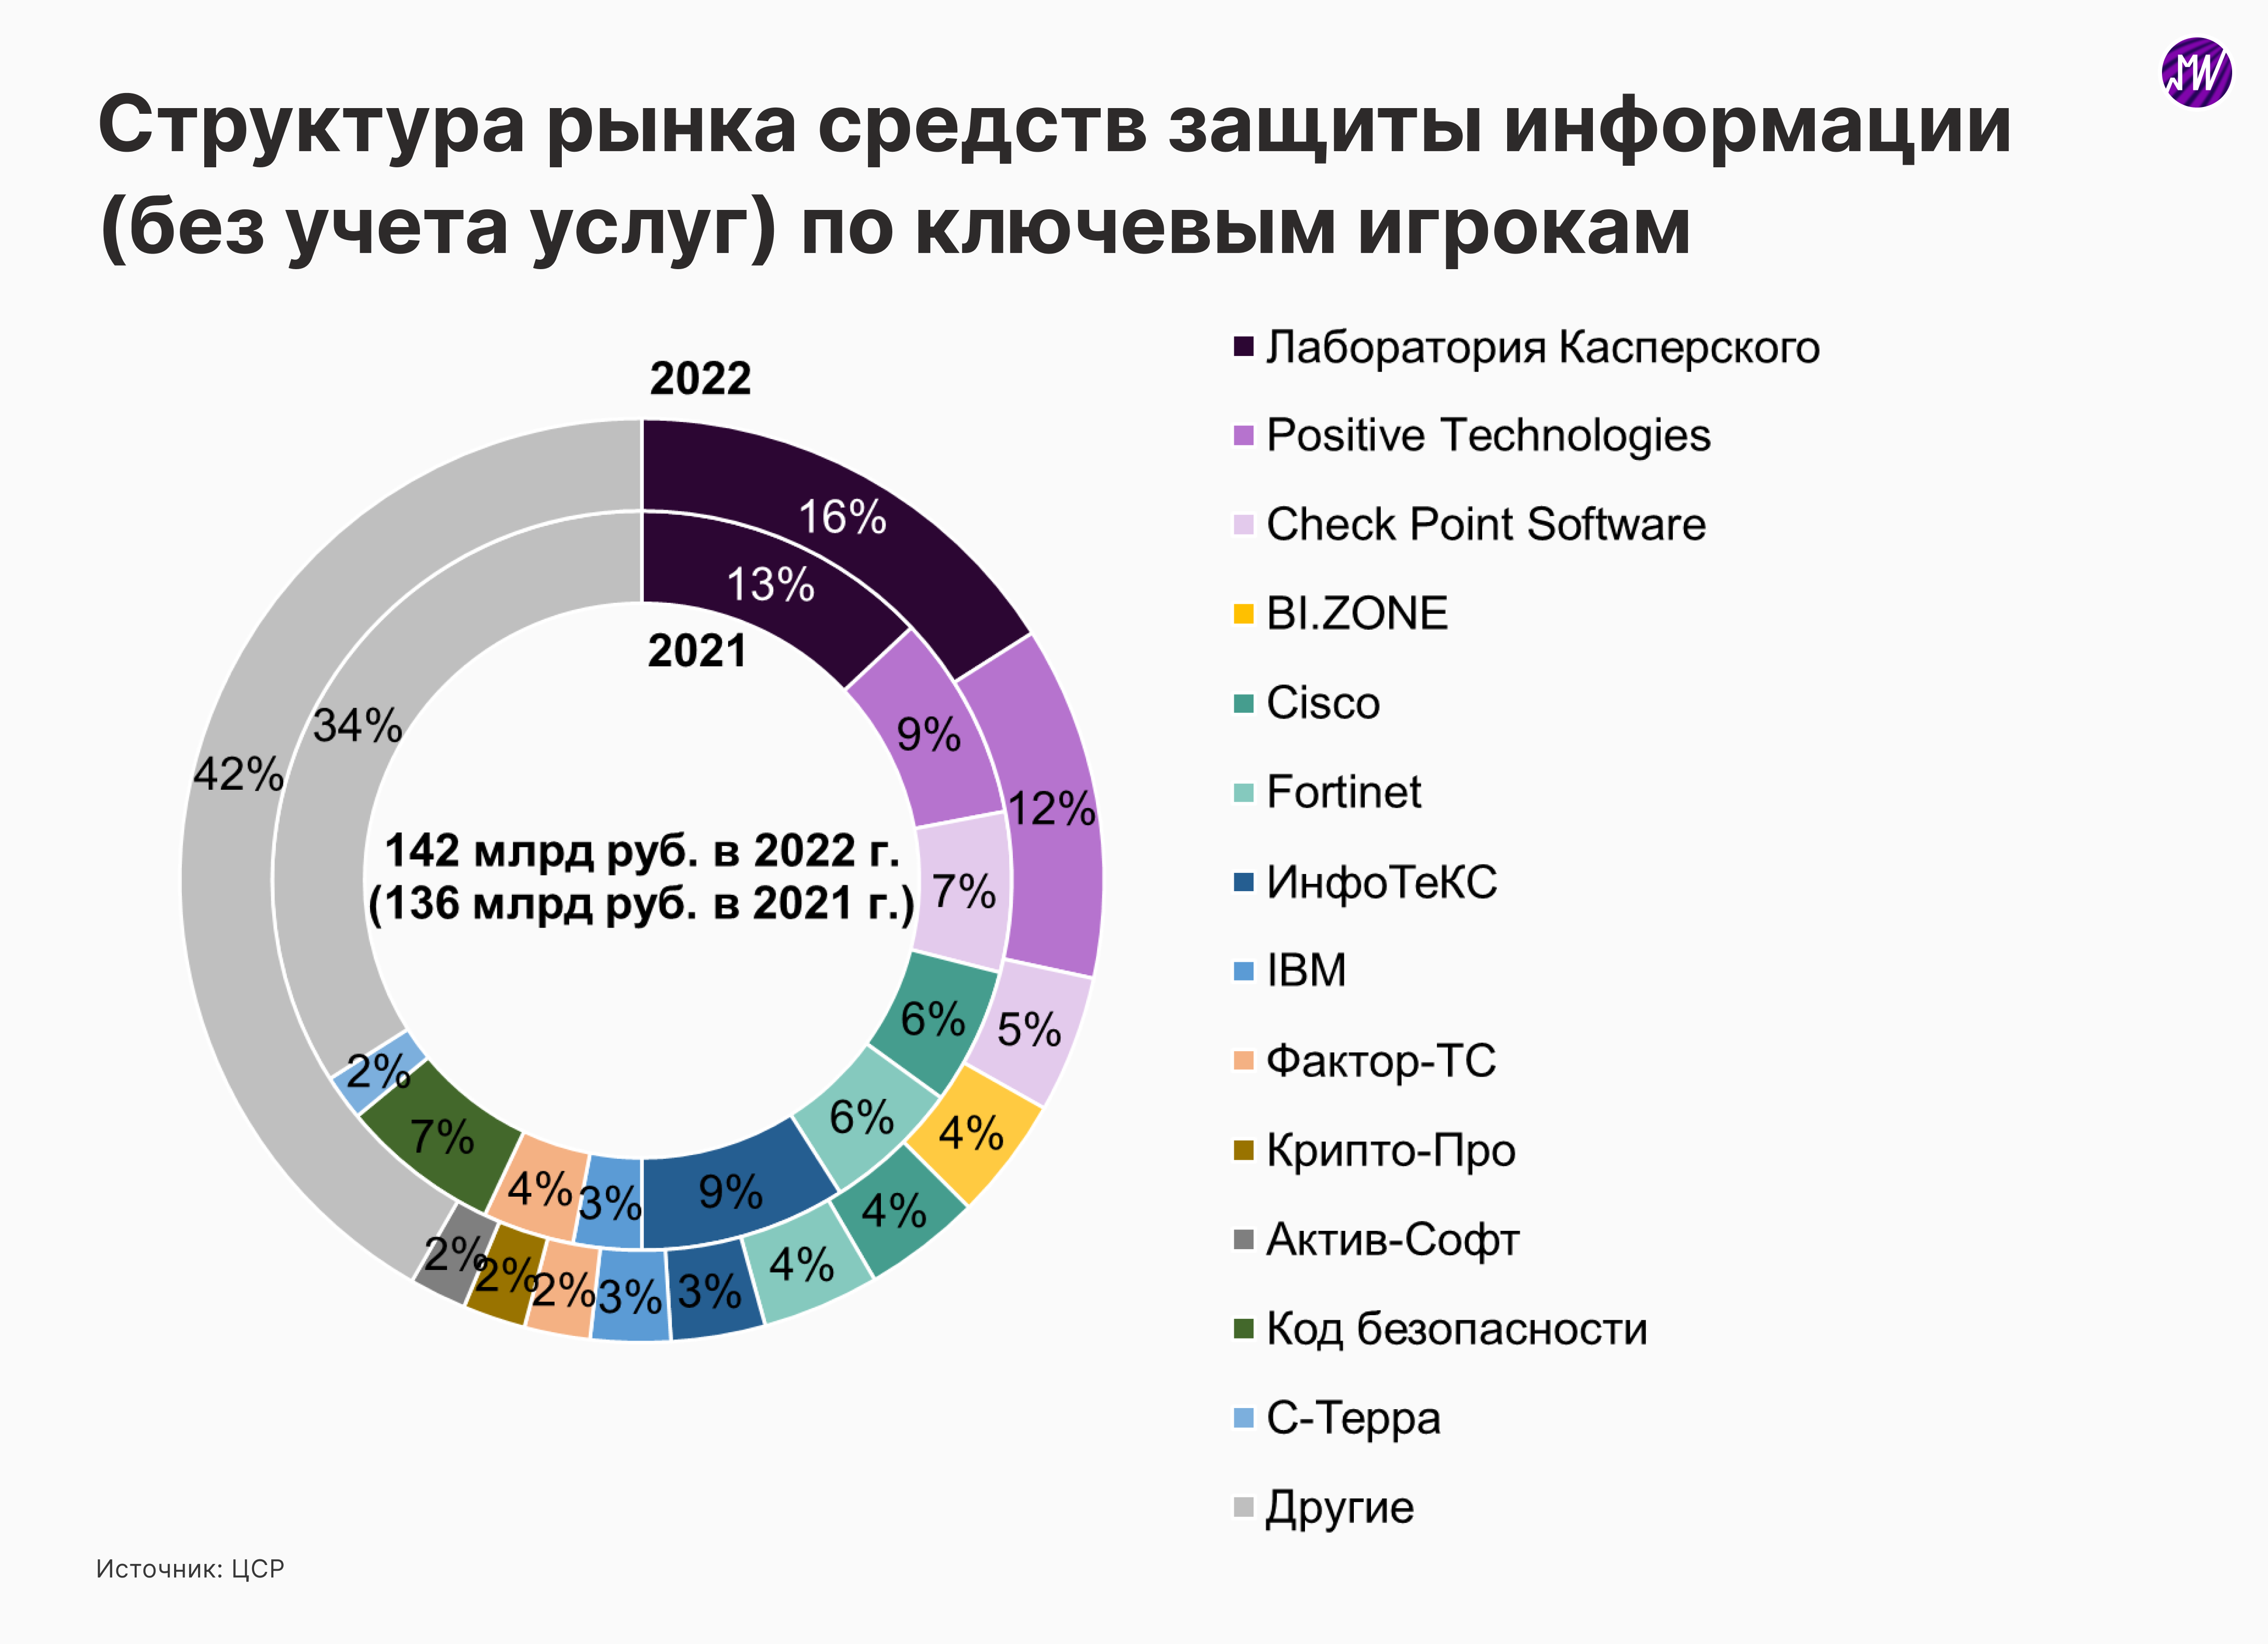 Рынок кибербезопасности в России сохраняет перспективы высоких темпов роста. Как это отразится на Positive Technologies?